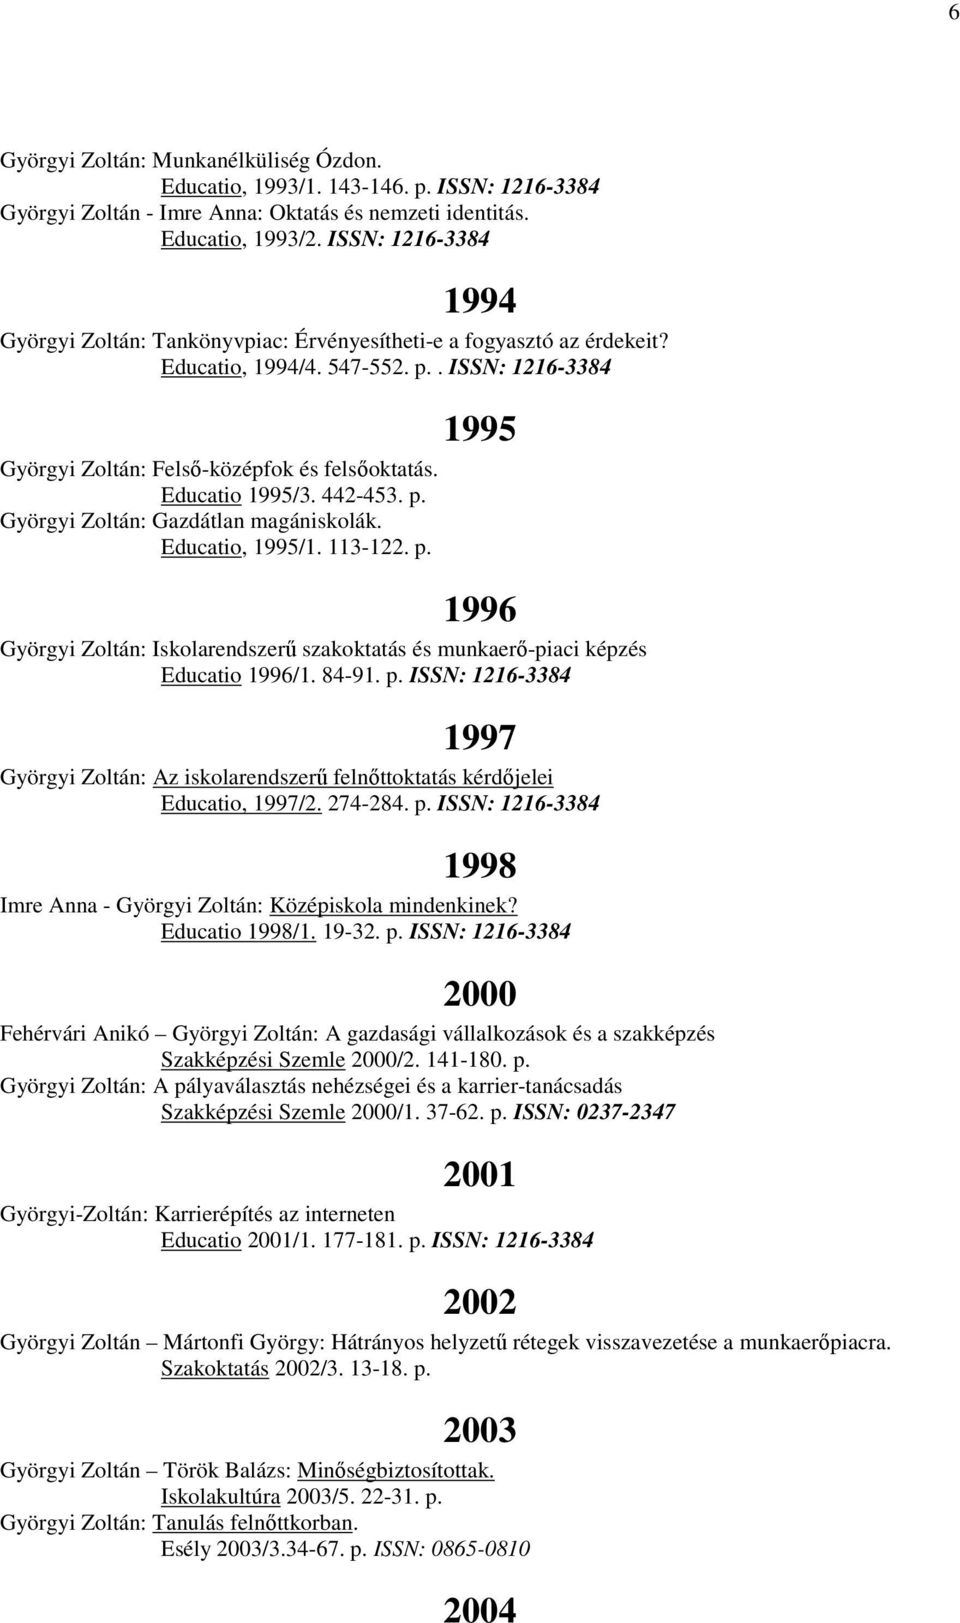 Educatio 1995/3. 442-453. p. Györgyi Zoltán: Gazdátlan magániskolák. Educatio, 1995/1. 113-122. p. 1996 Györgyi Zoltán: Iskolarendszerű szakoktatás és munkaerő-piaci képzés Educatio 1996/1. 84-91. p. ISSN: 1216-3384 1997 Györgyi Zoltán: Az iskolarendszerű felnőttoktatás kérdőjelei Educatio, 1997/2.